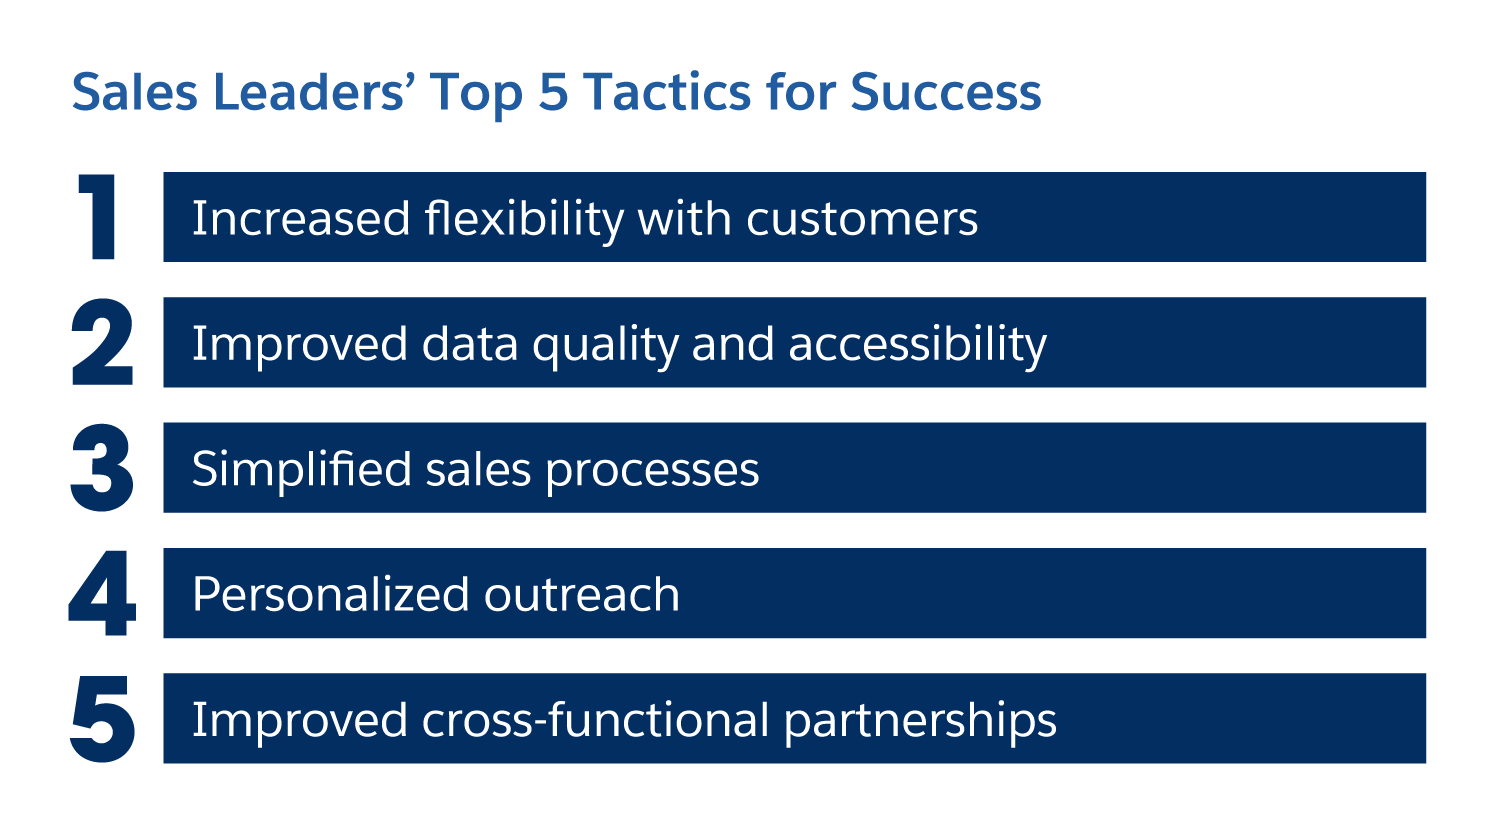 Sales leaders' top 5 tactics for success